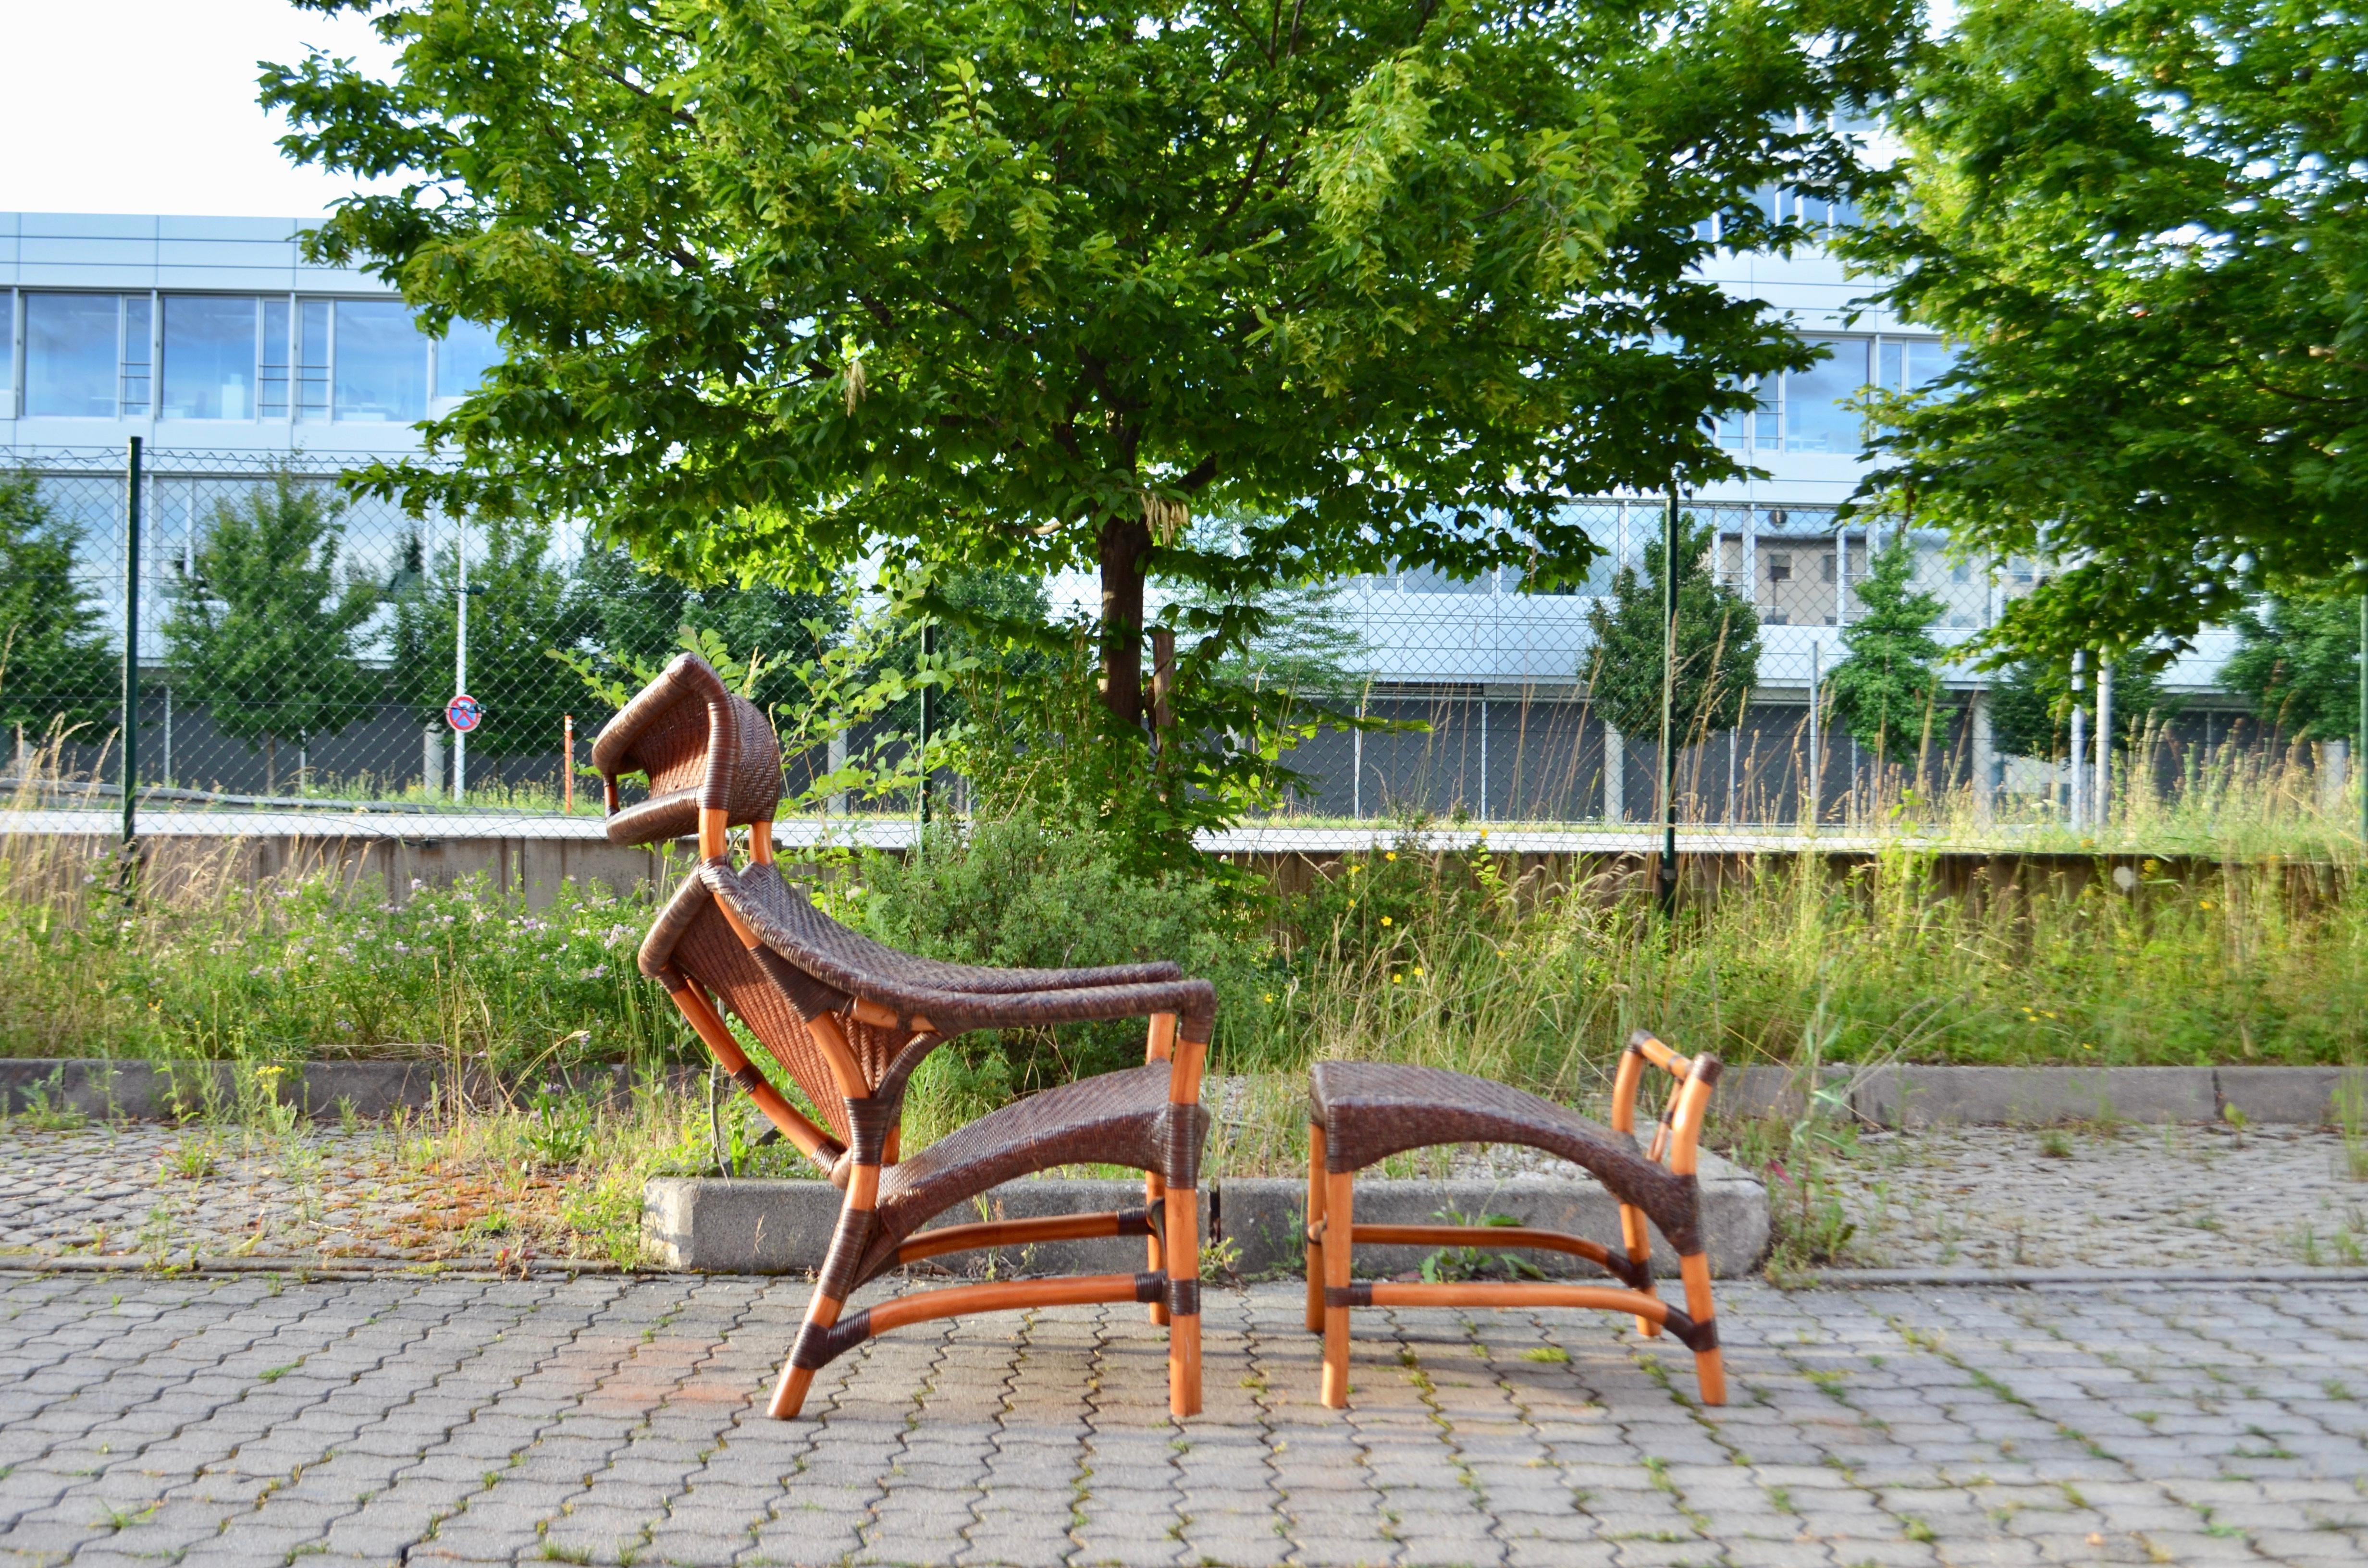 Una hermosa silla de caña tejida orgánicamente con armazón de bambú.
Diseñado por Yuzuru Yamakawa para Yamkawa rattan.
1ª versión de los años 80.
La silla de caña de bambú viene con la otomana, que combina a la perfección en una forma de línea